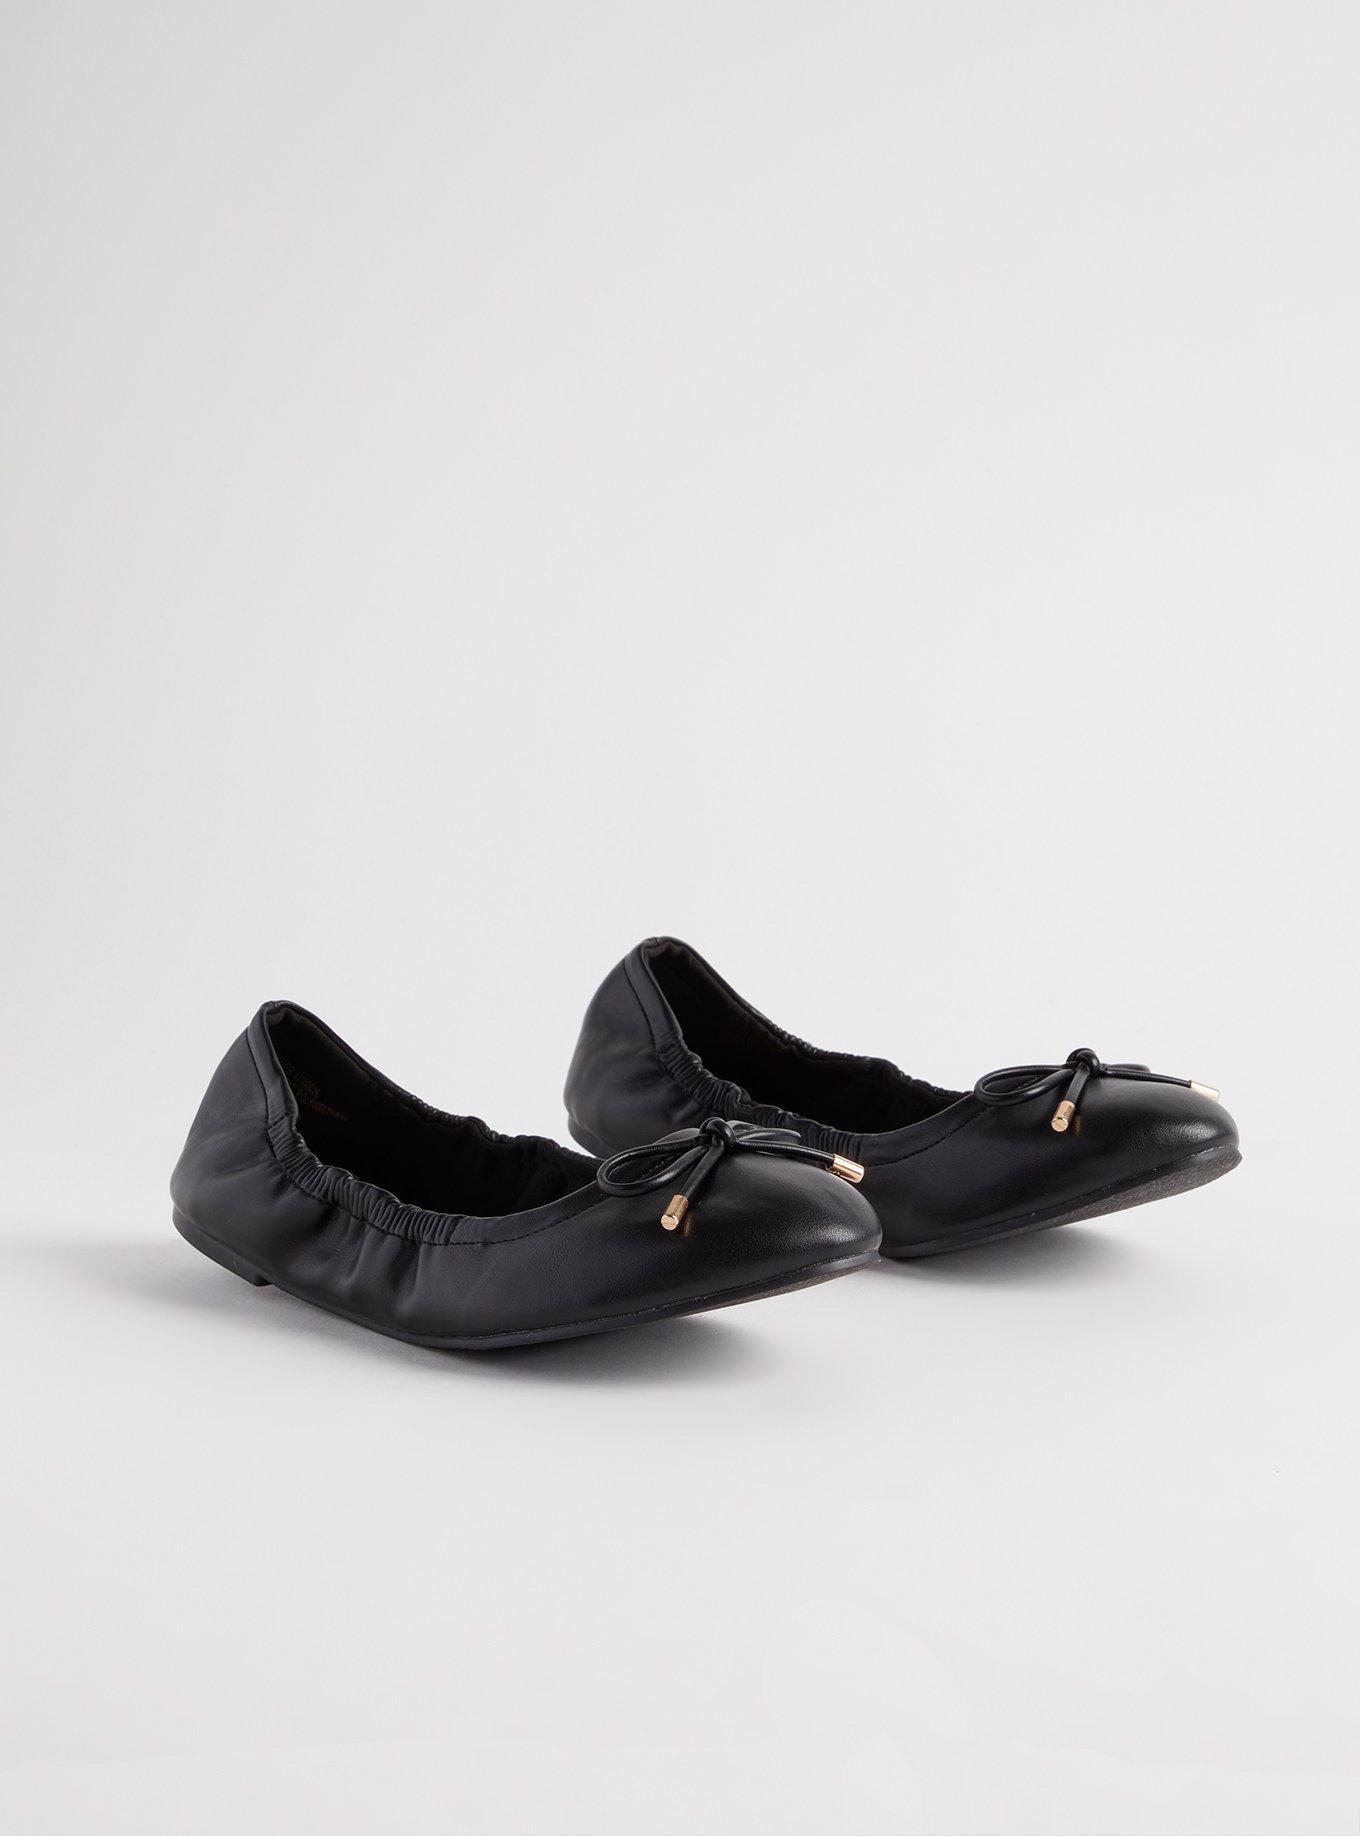 Women's Feliz Ballet Flat In Black Leather - Thursday